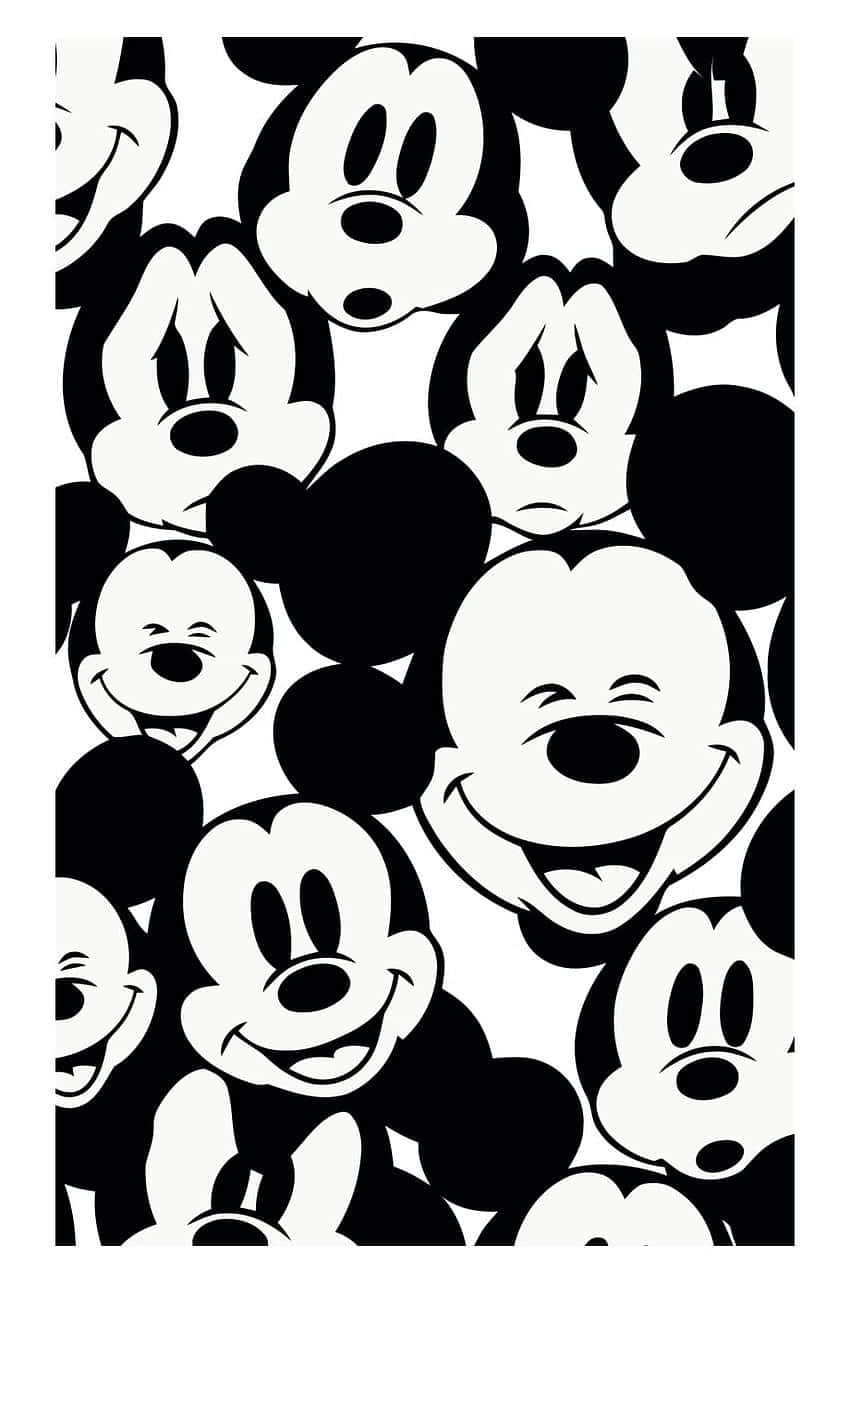 Ensvart Elektronisk Enhet Med En Design Av Den Ikoniska Disney-figuren, Musse Pigg. Wallpaper